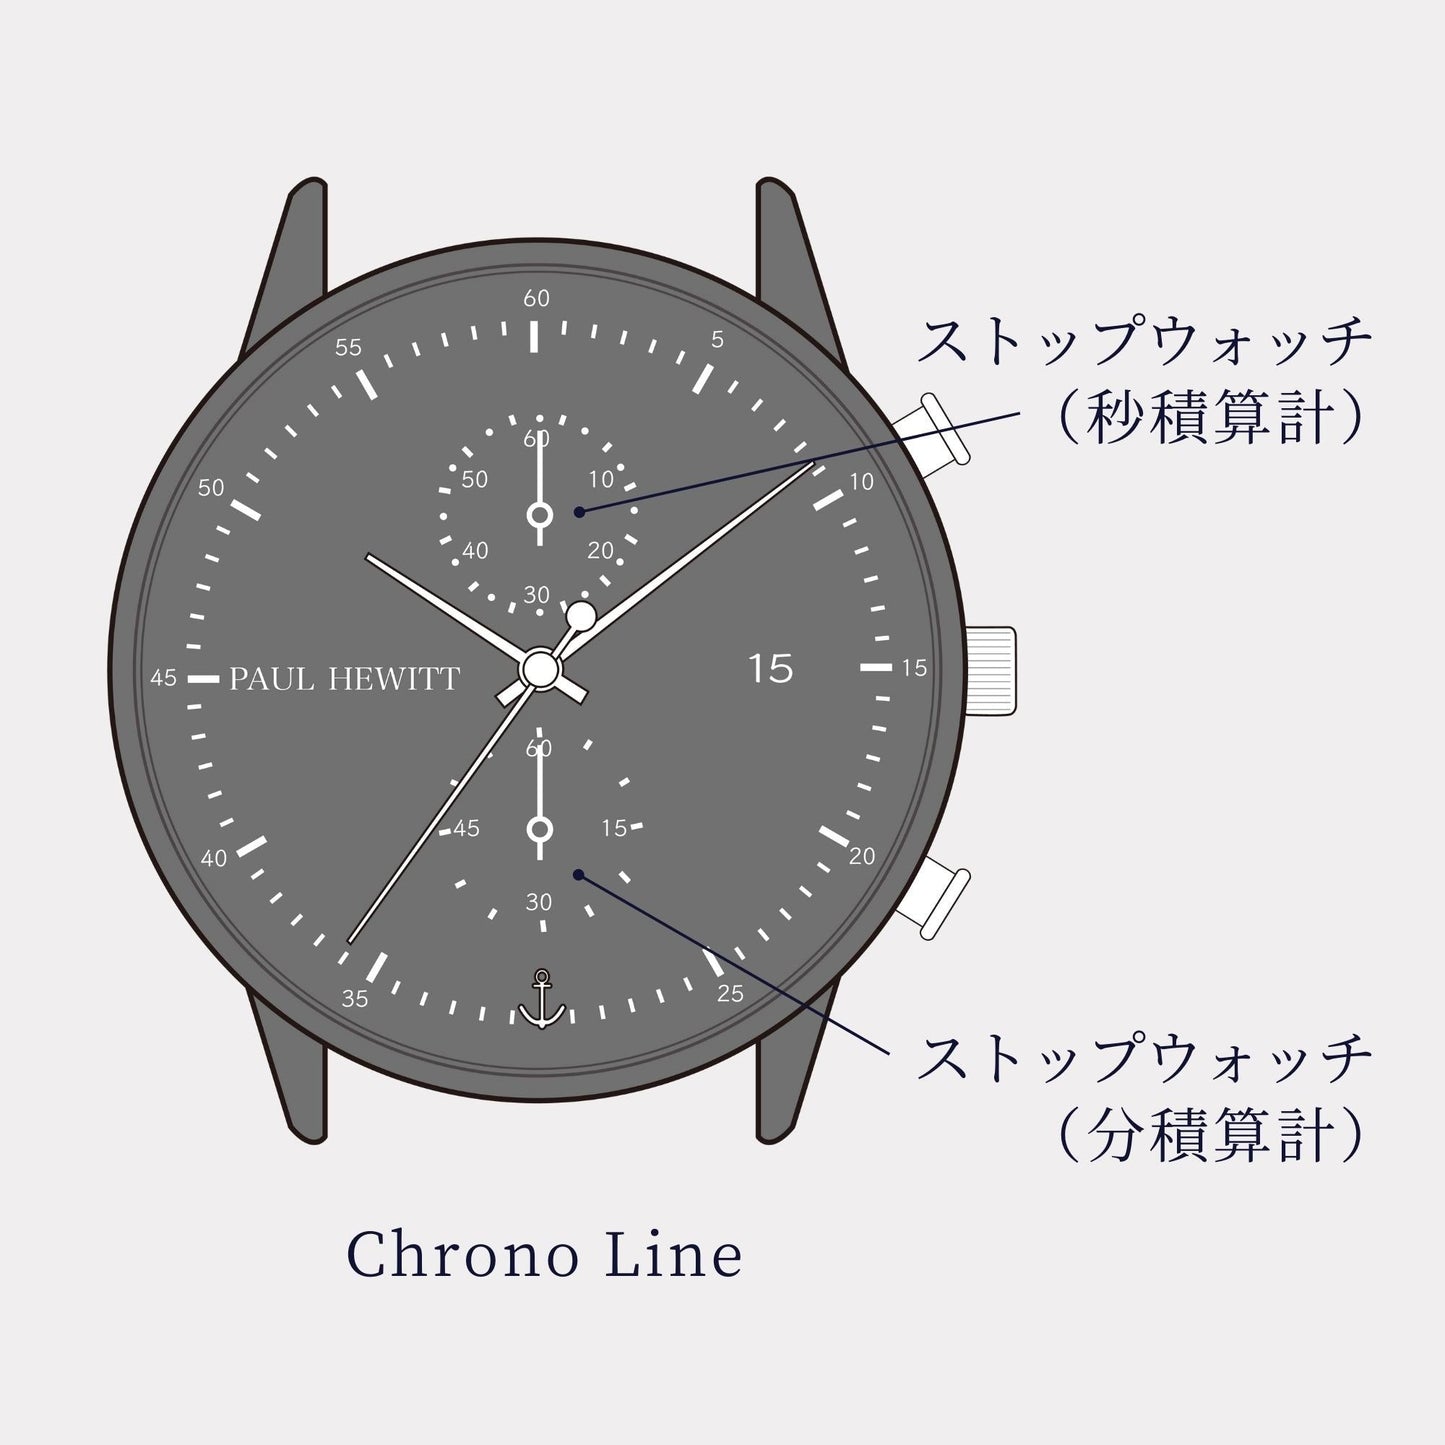 【Perfect Match】Chrono Line ミッドナイトオーシャン シルバーメタル and Paddle Cuff - ポールヒューイット日本公式サイト